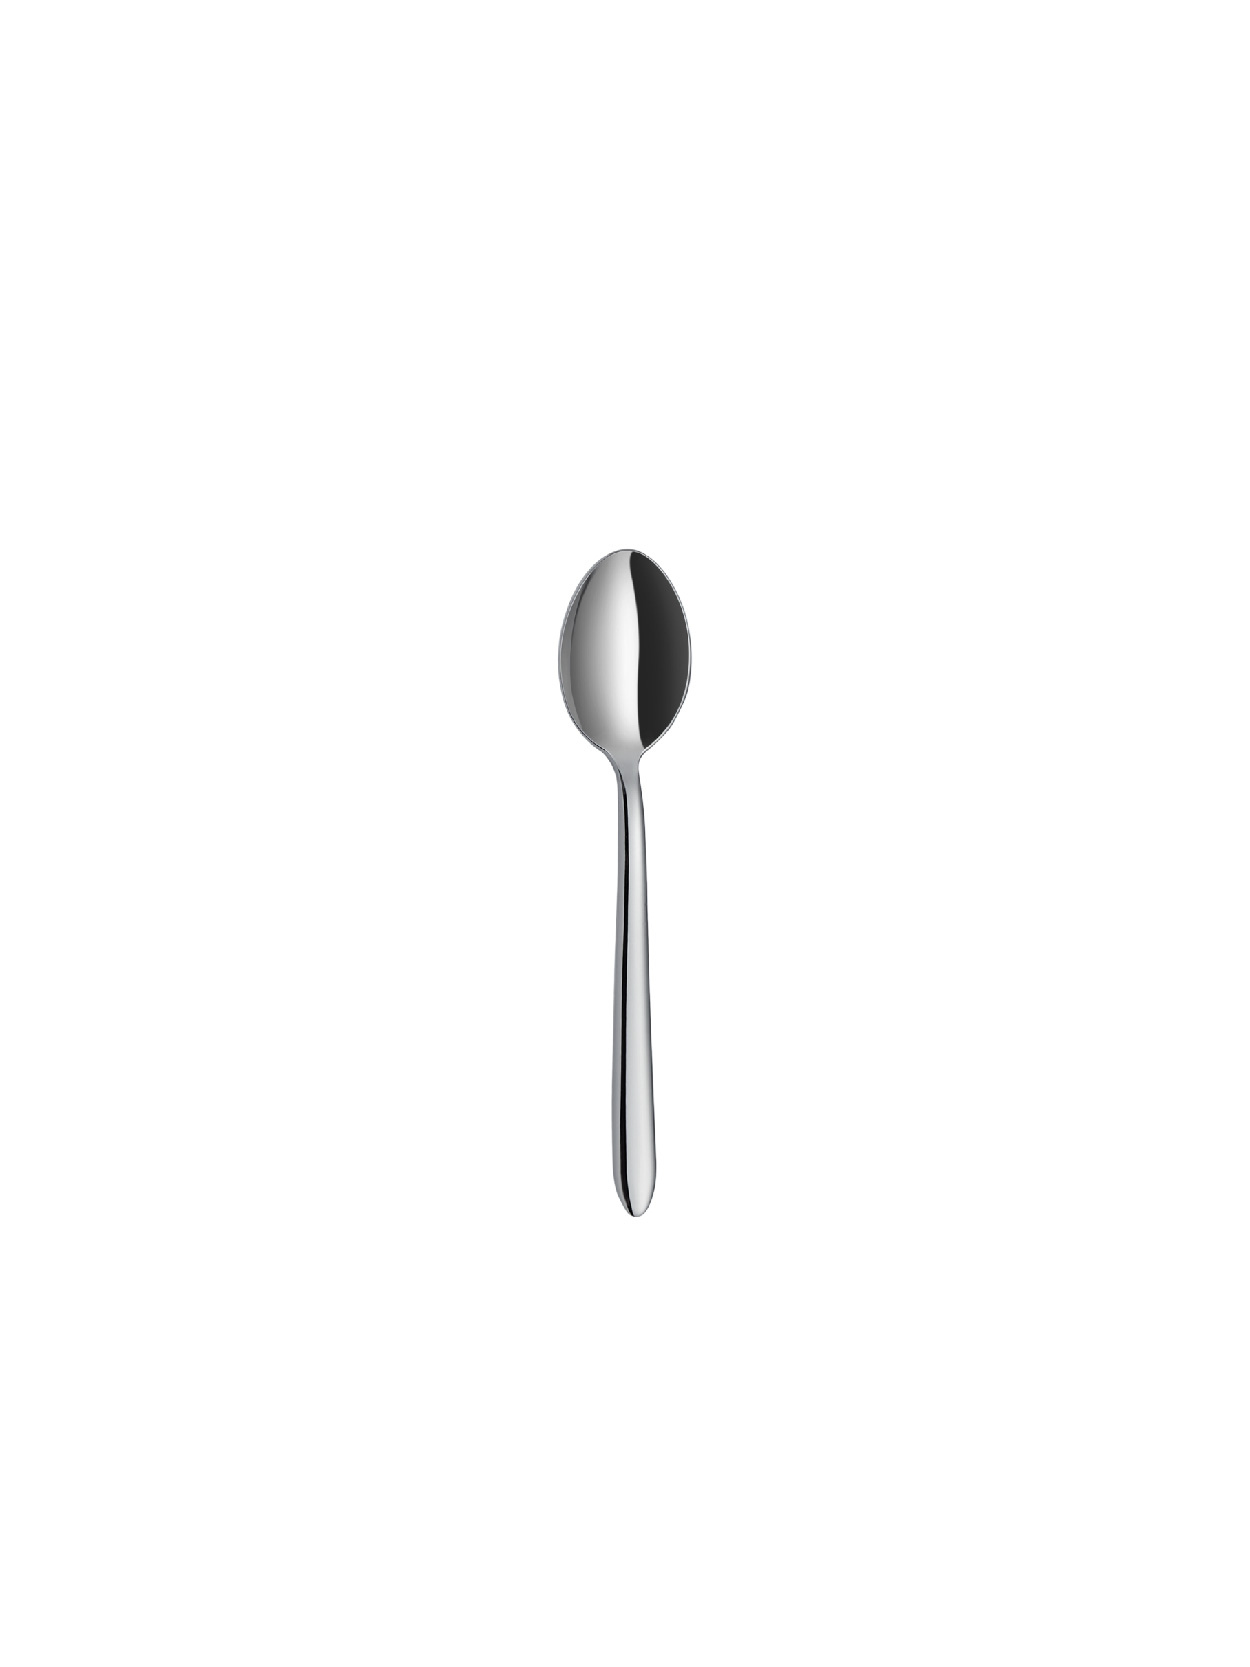 Plaides - Plain - Tea Spoon (6 Pcs)